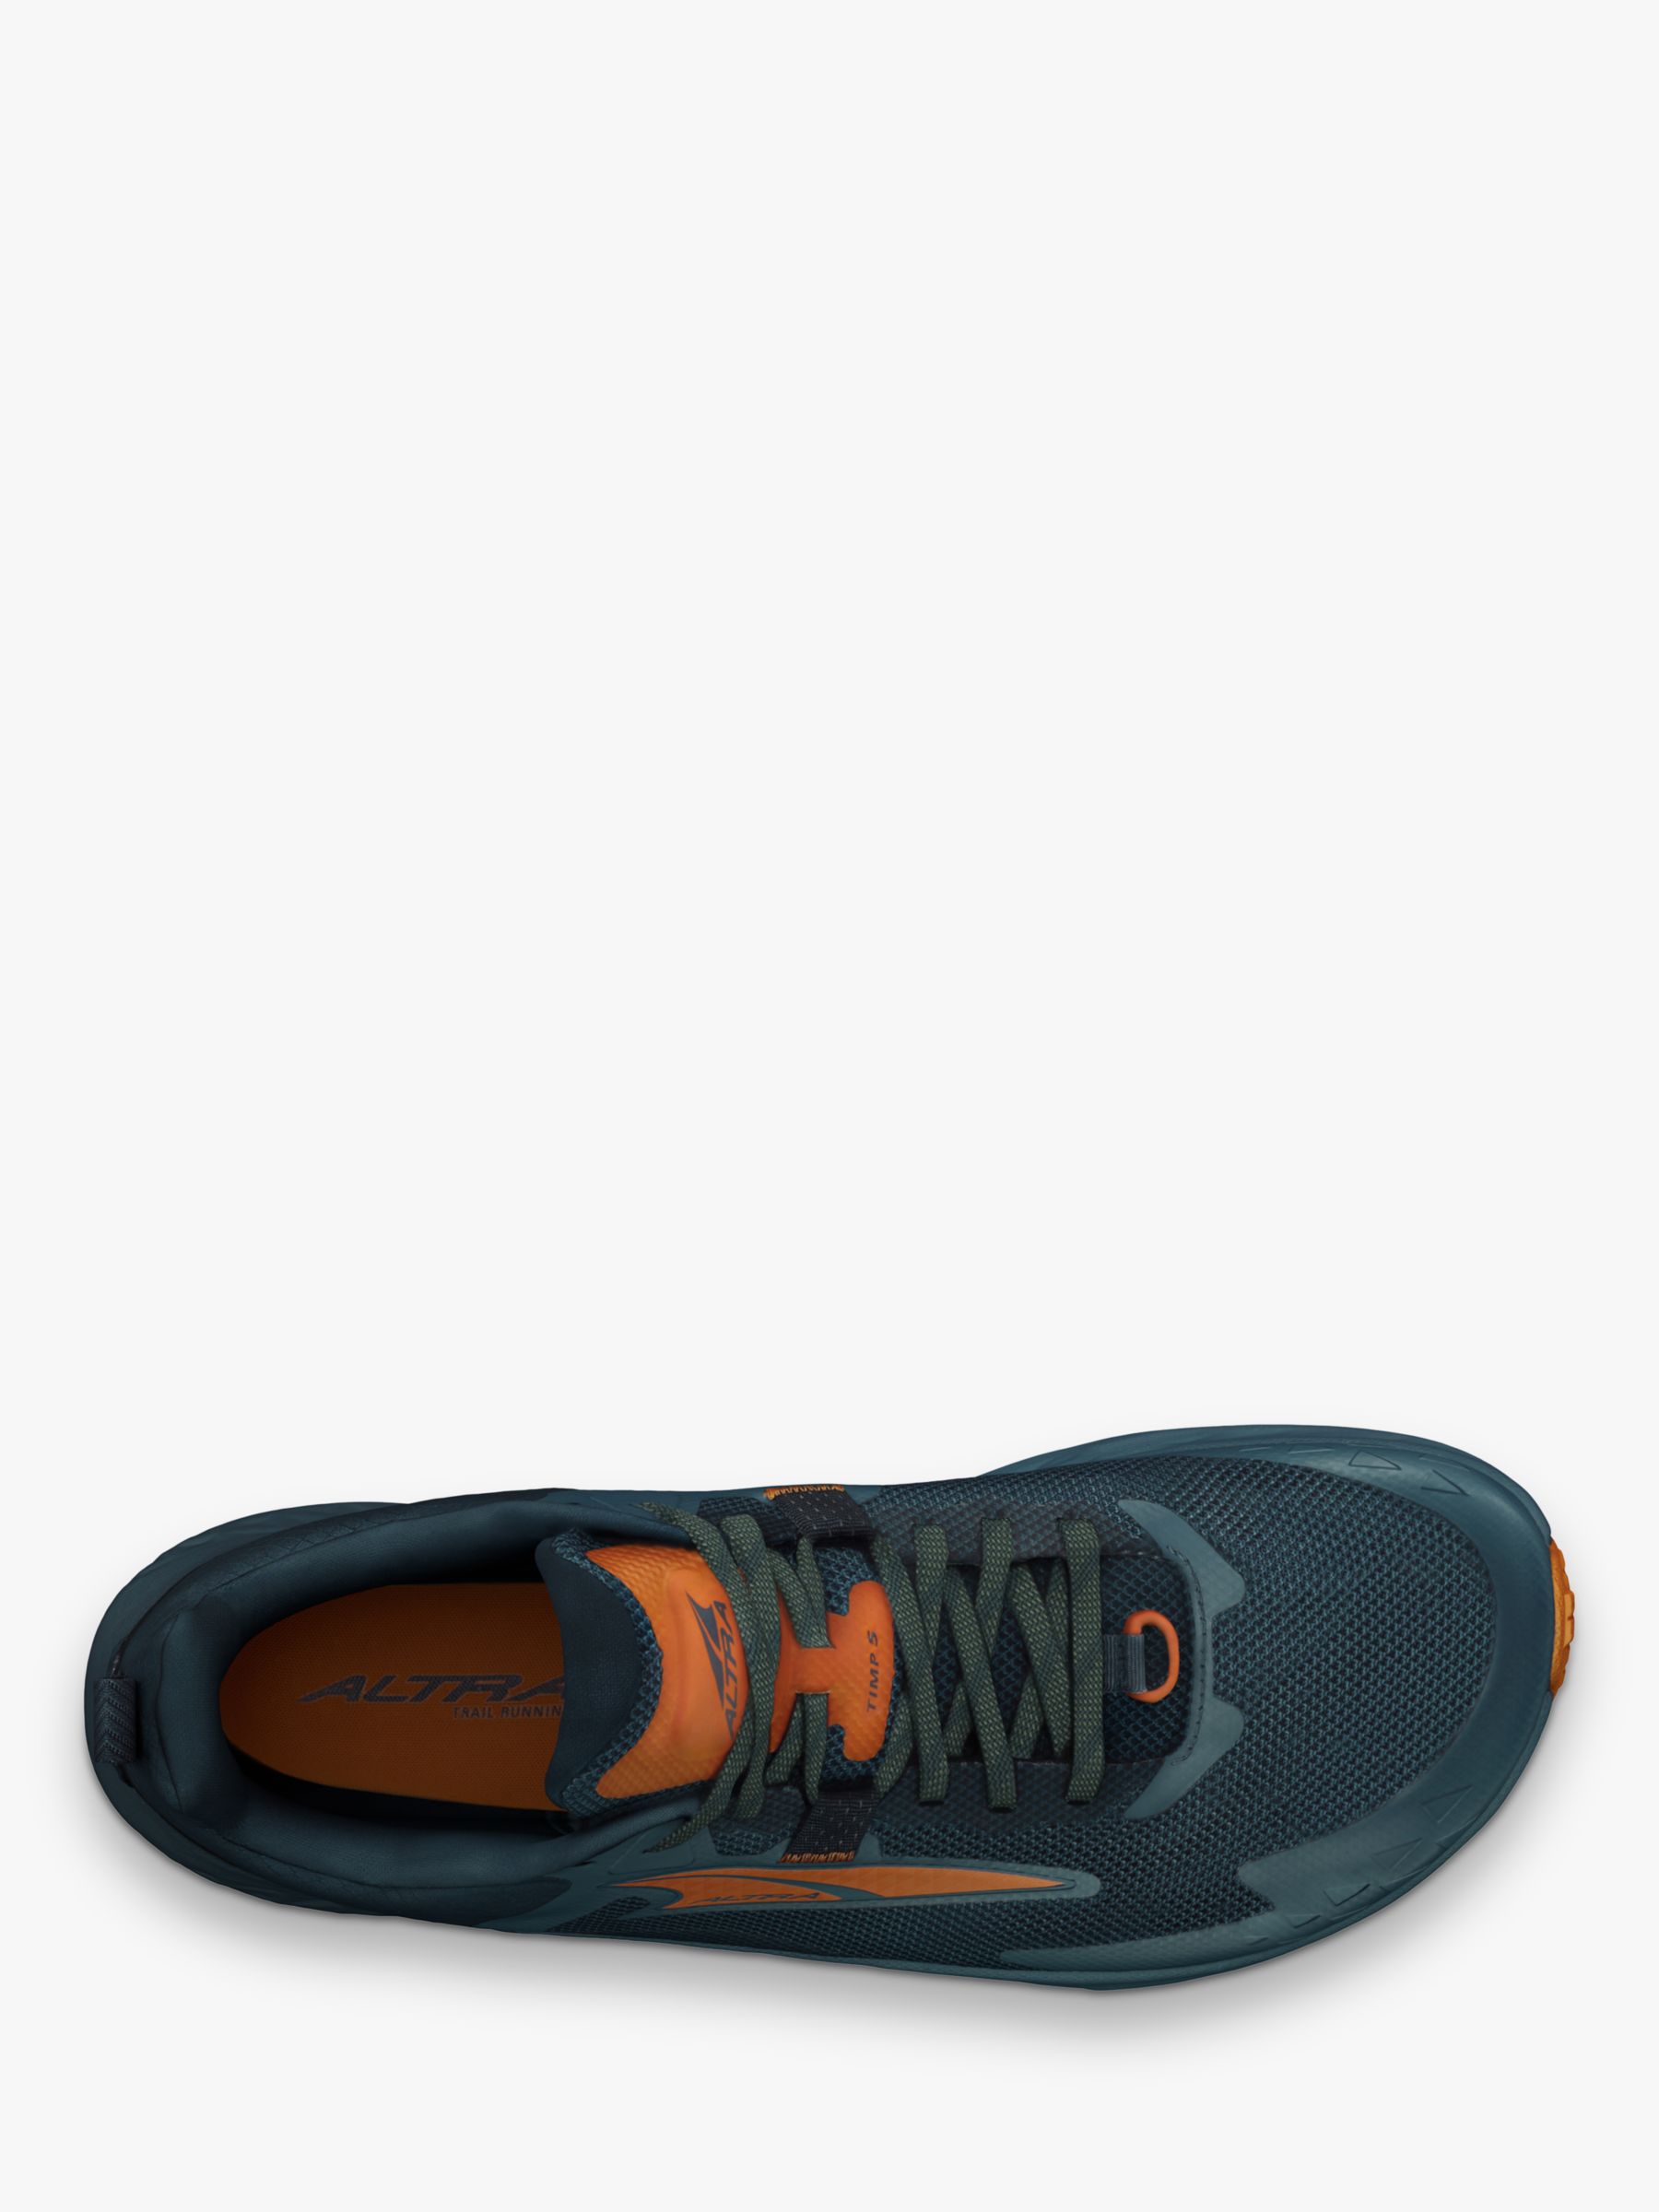 Buy Altra Timp 5 Men's Running Shoes, Blue/Orange Online at johnlewis.com